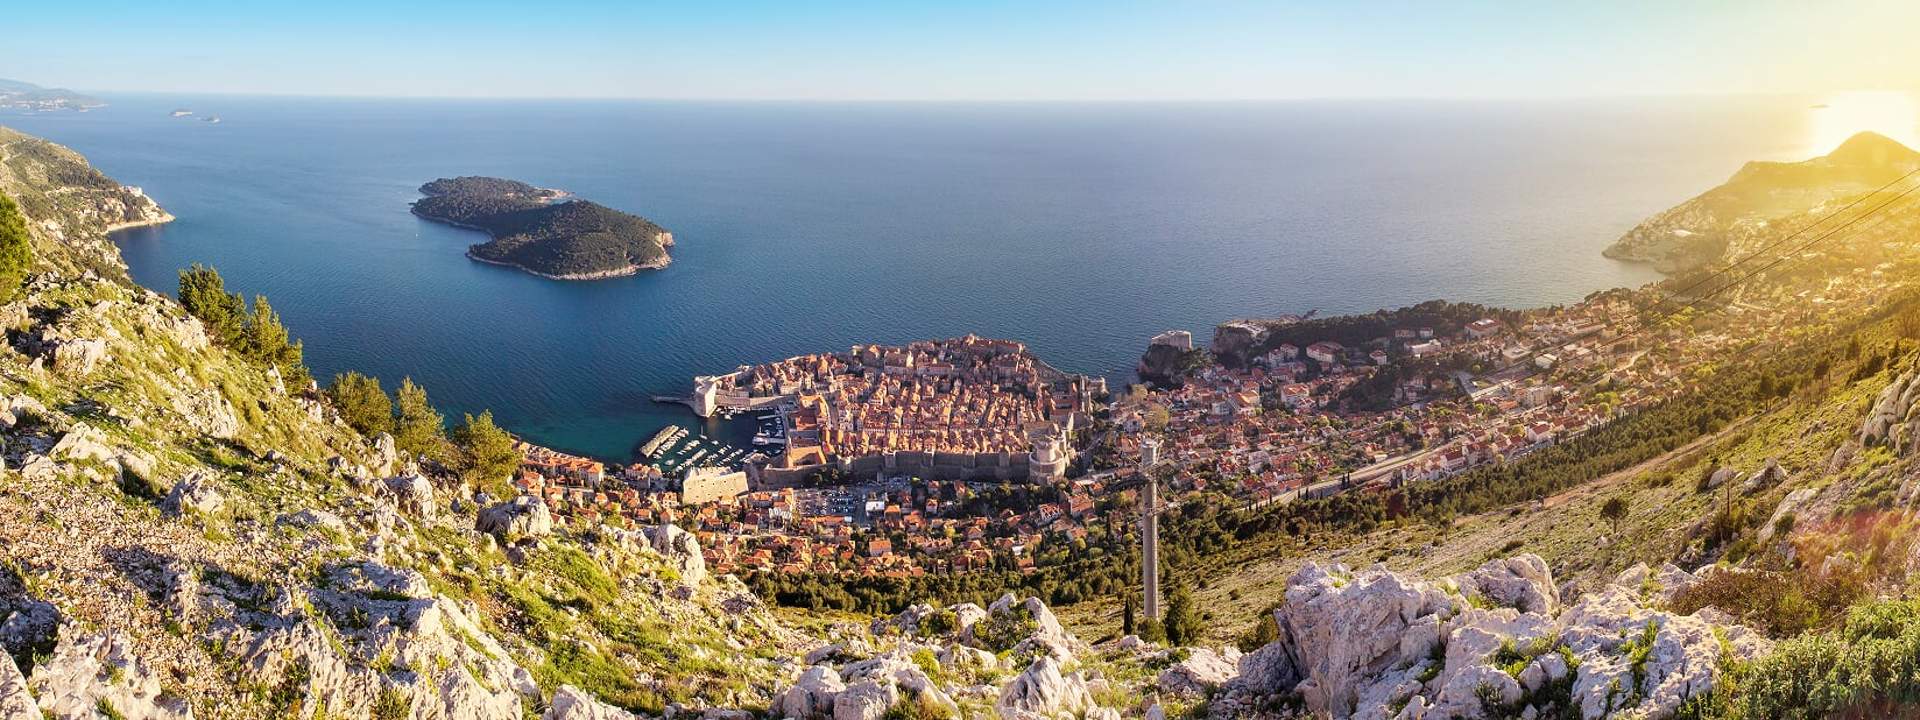 Entdecken Sie den Charme Kroatiens und die Schönheit seiner Inseln